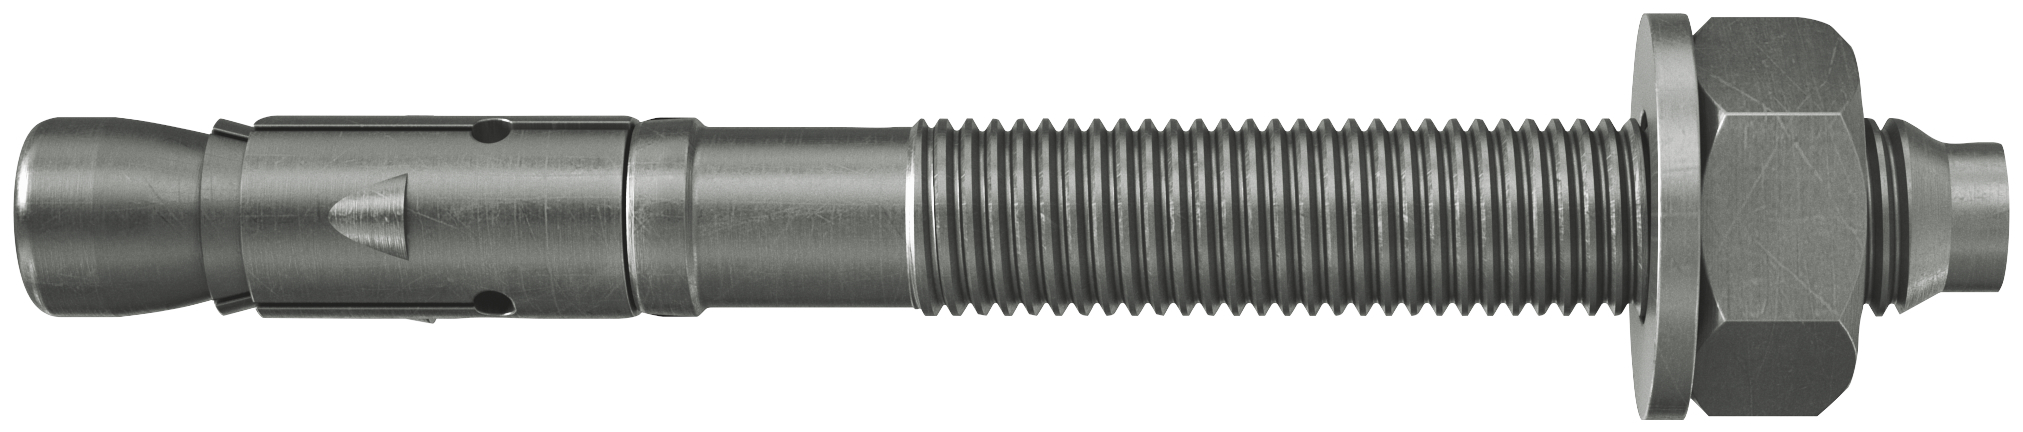 fischer Tassello acciaio FAZ II 12/160 A4 (20 Pz.) L'ancorante ad espansione ad alte prestazioni per carichi statici su calcestruzzo fessurato e per applicazioni sismiche. Versione in acciaio inossidabile con classe di resistenza alla corrosione CRC III..